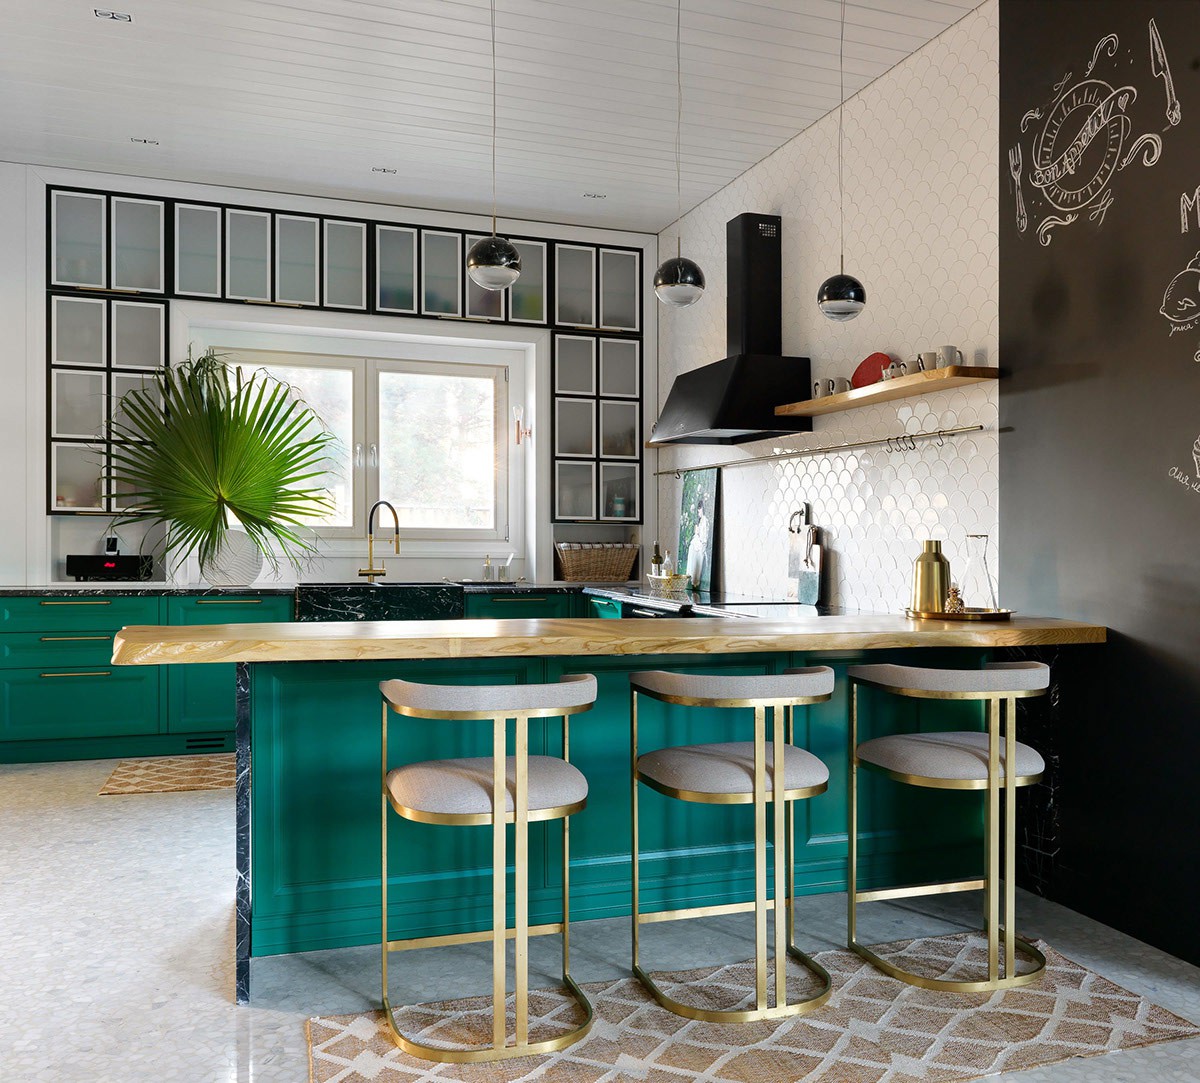 Hình ảnh không gian nấu nướng lạ mắt với sắc xanh ngọc được sử dụng cho hệ tủ lưu trữ và đảo bếp